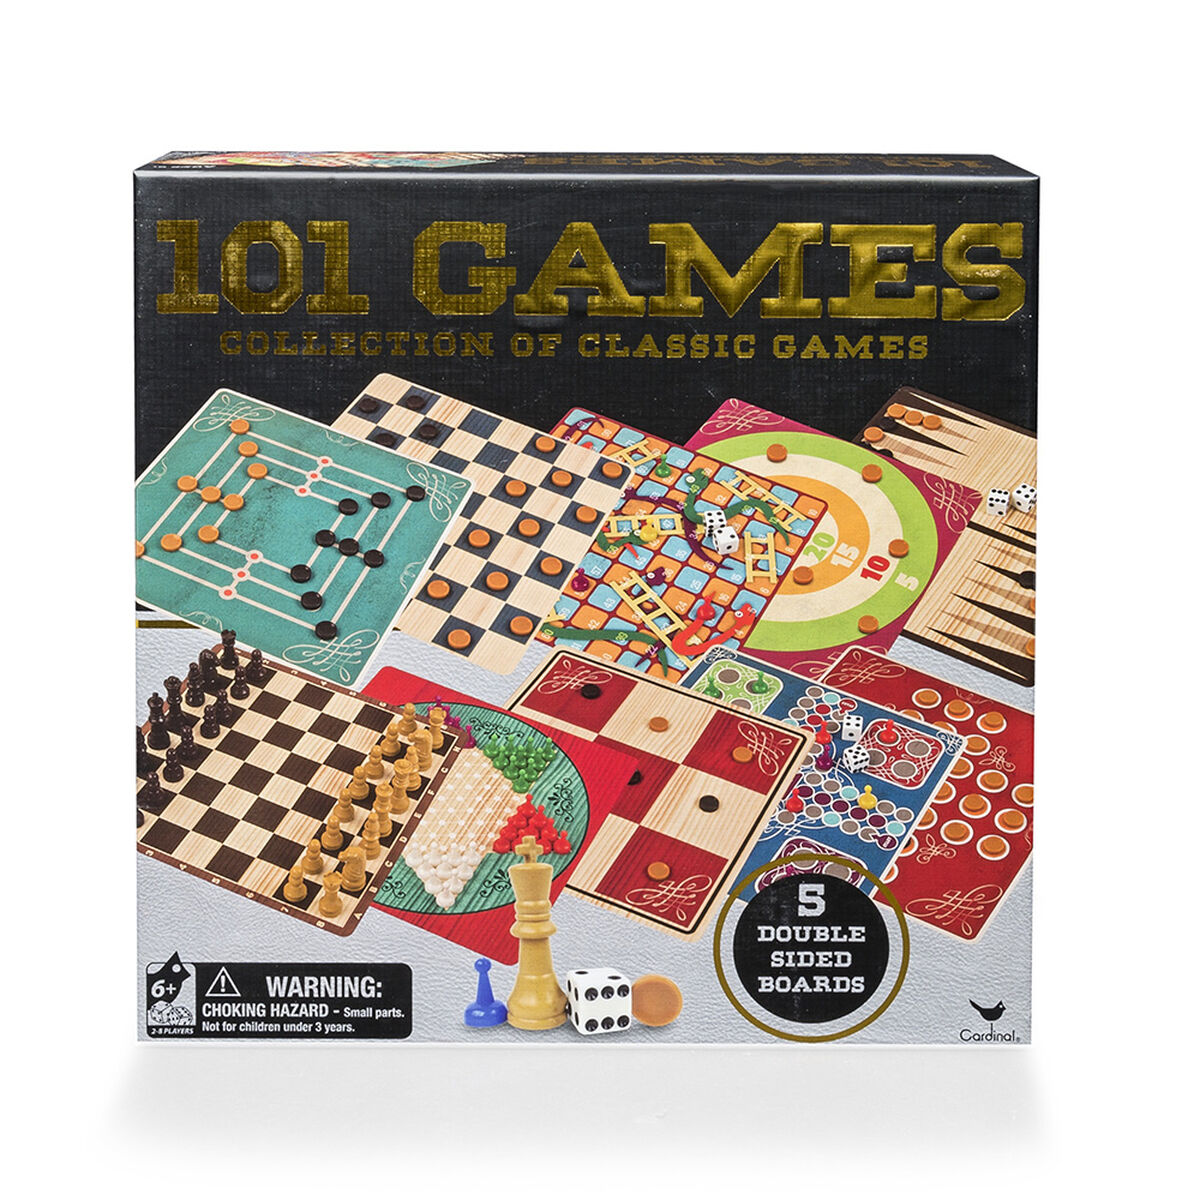 Familiar 101 Juegos Caja Games